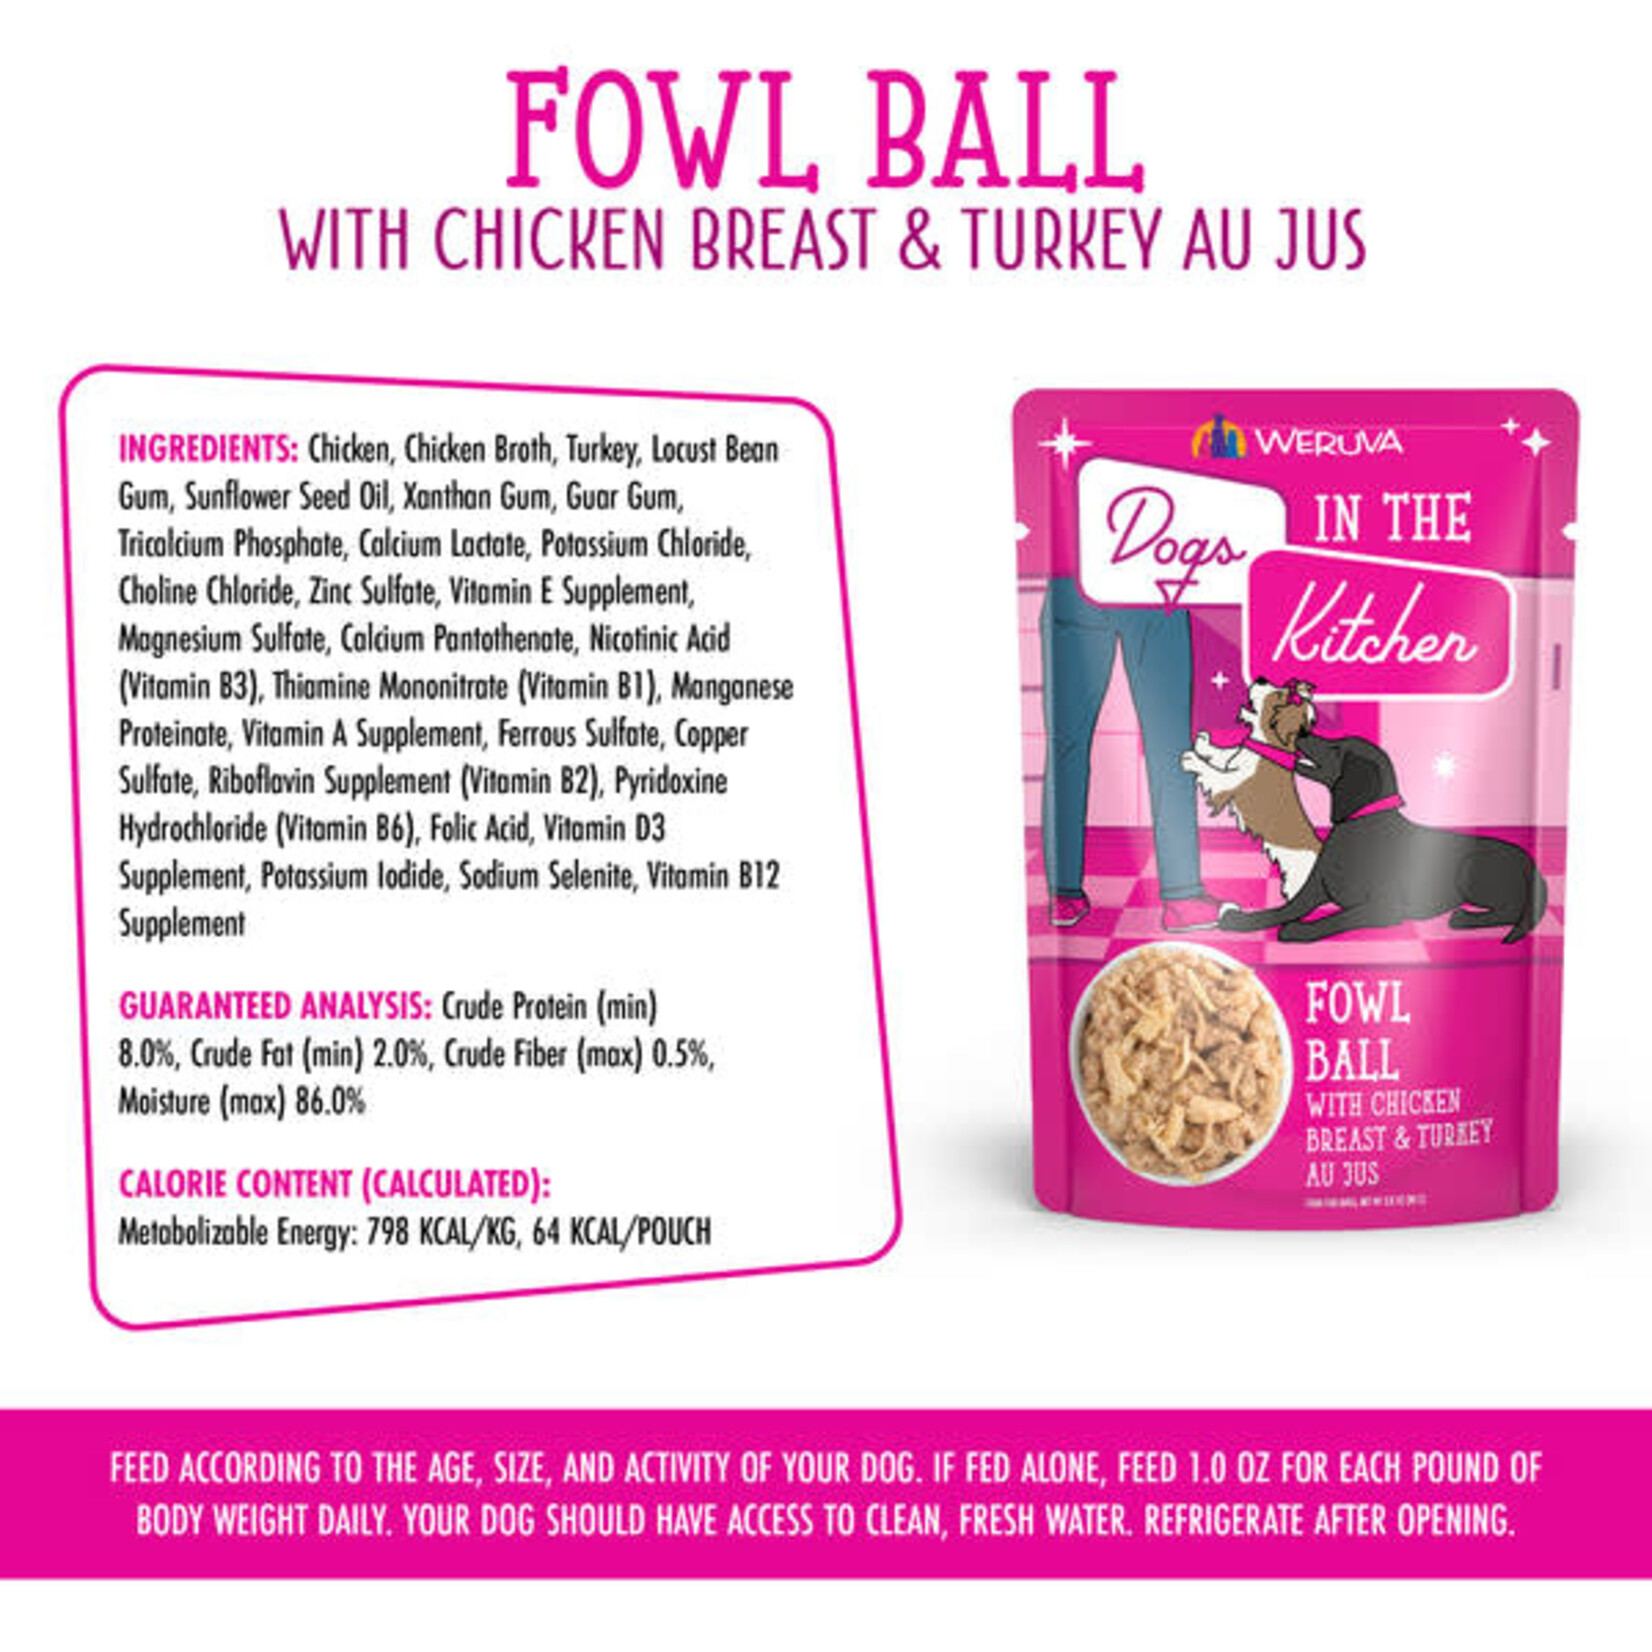 Weruva Dogs in the Kitchen - Fowl Ball with Chicken & Turkey Au Jus